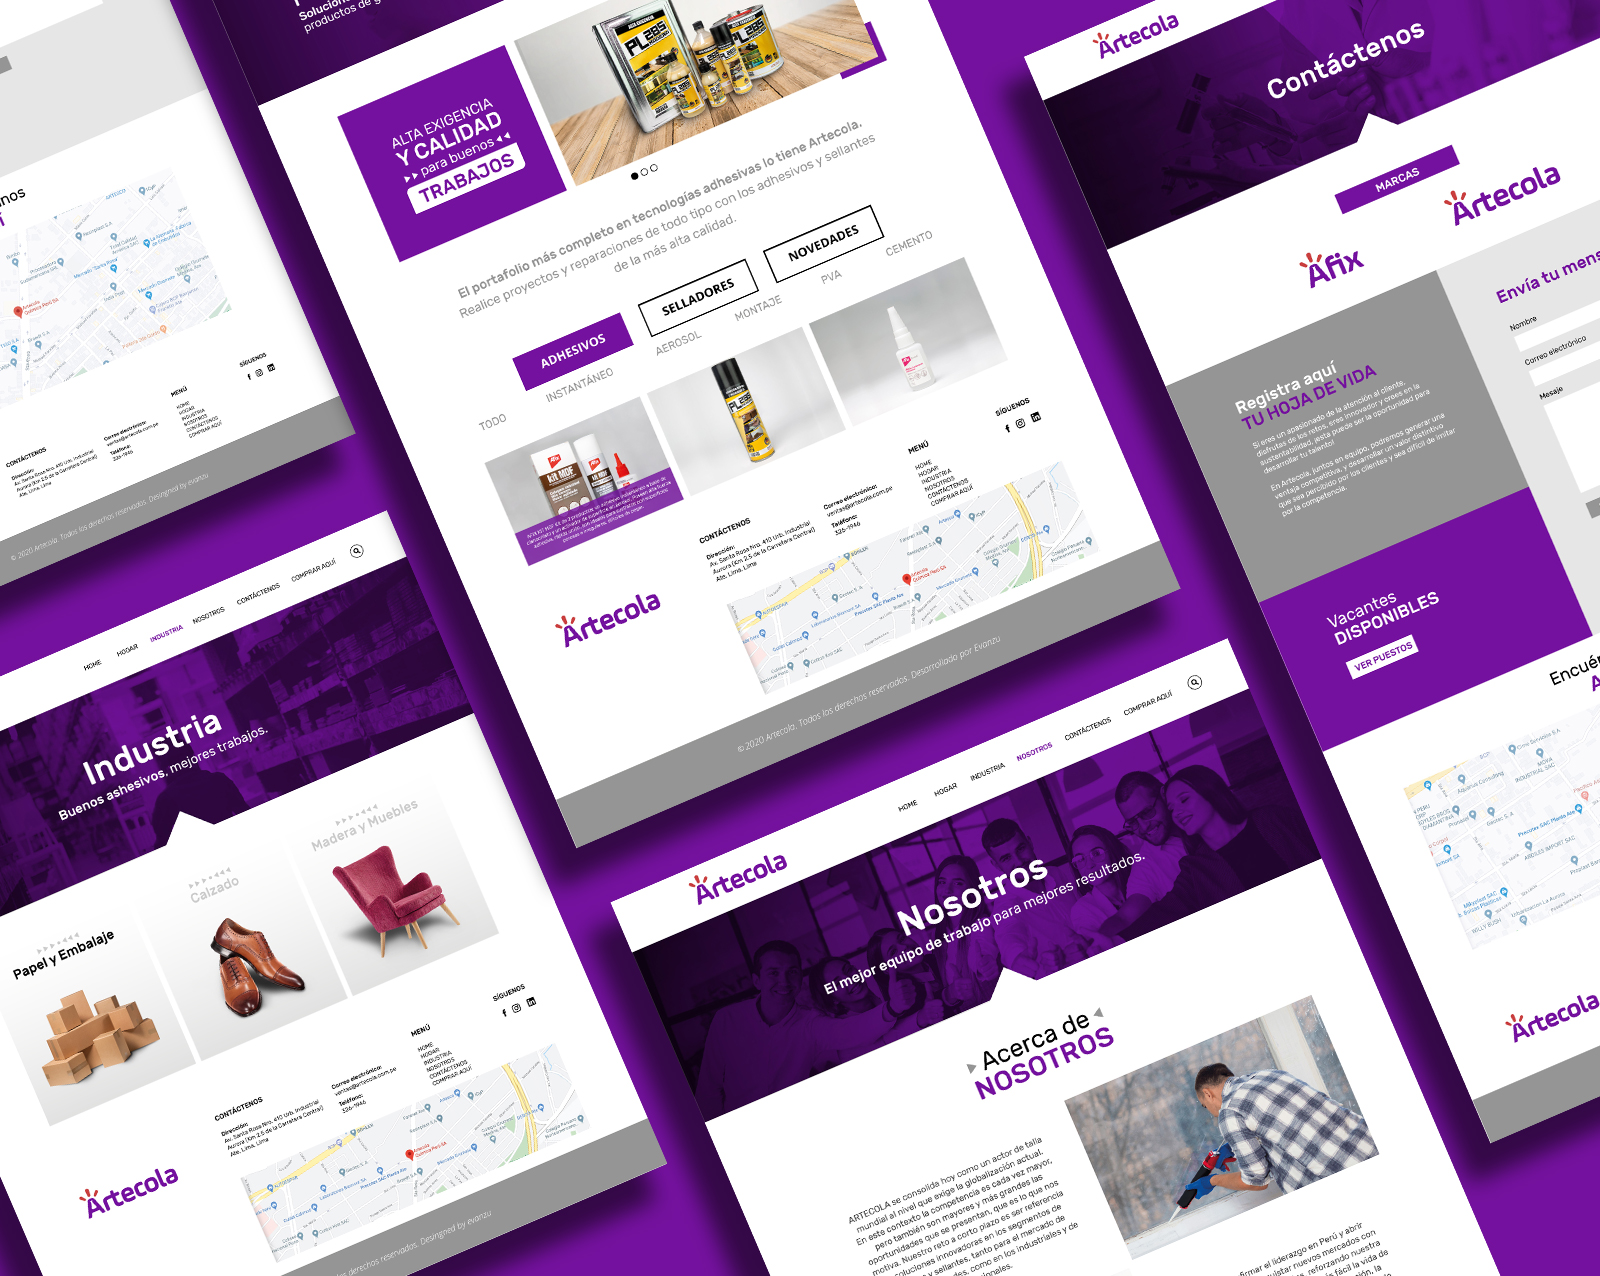 Páginas interiores del diseño web de Artecola